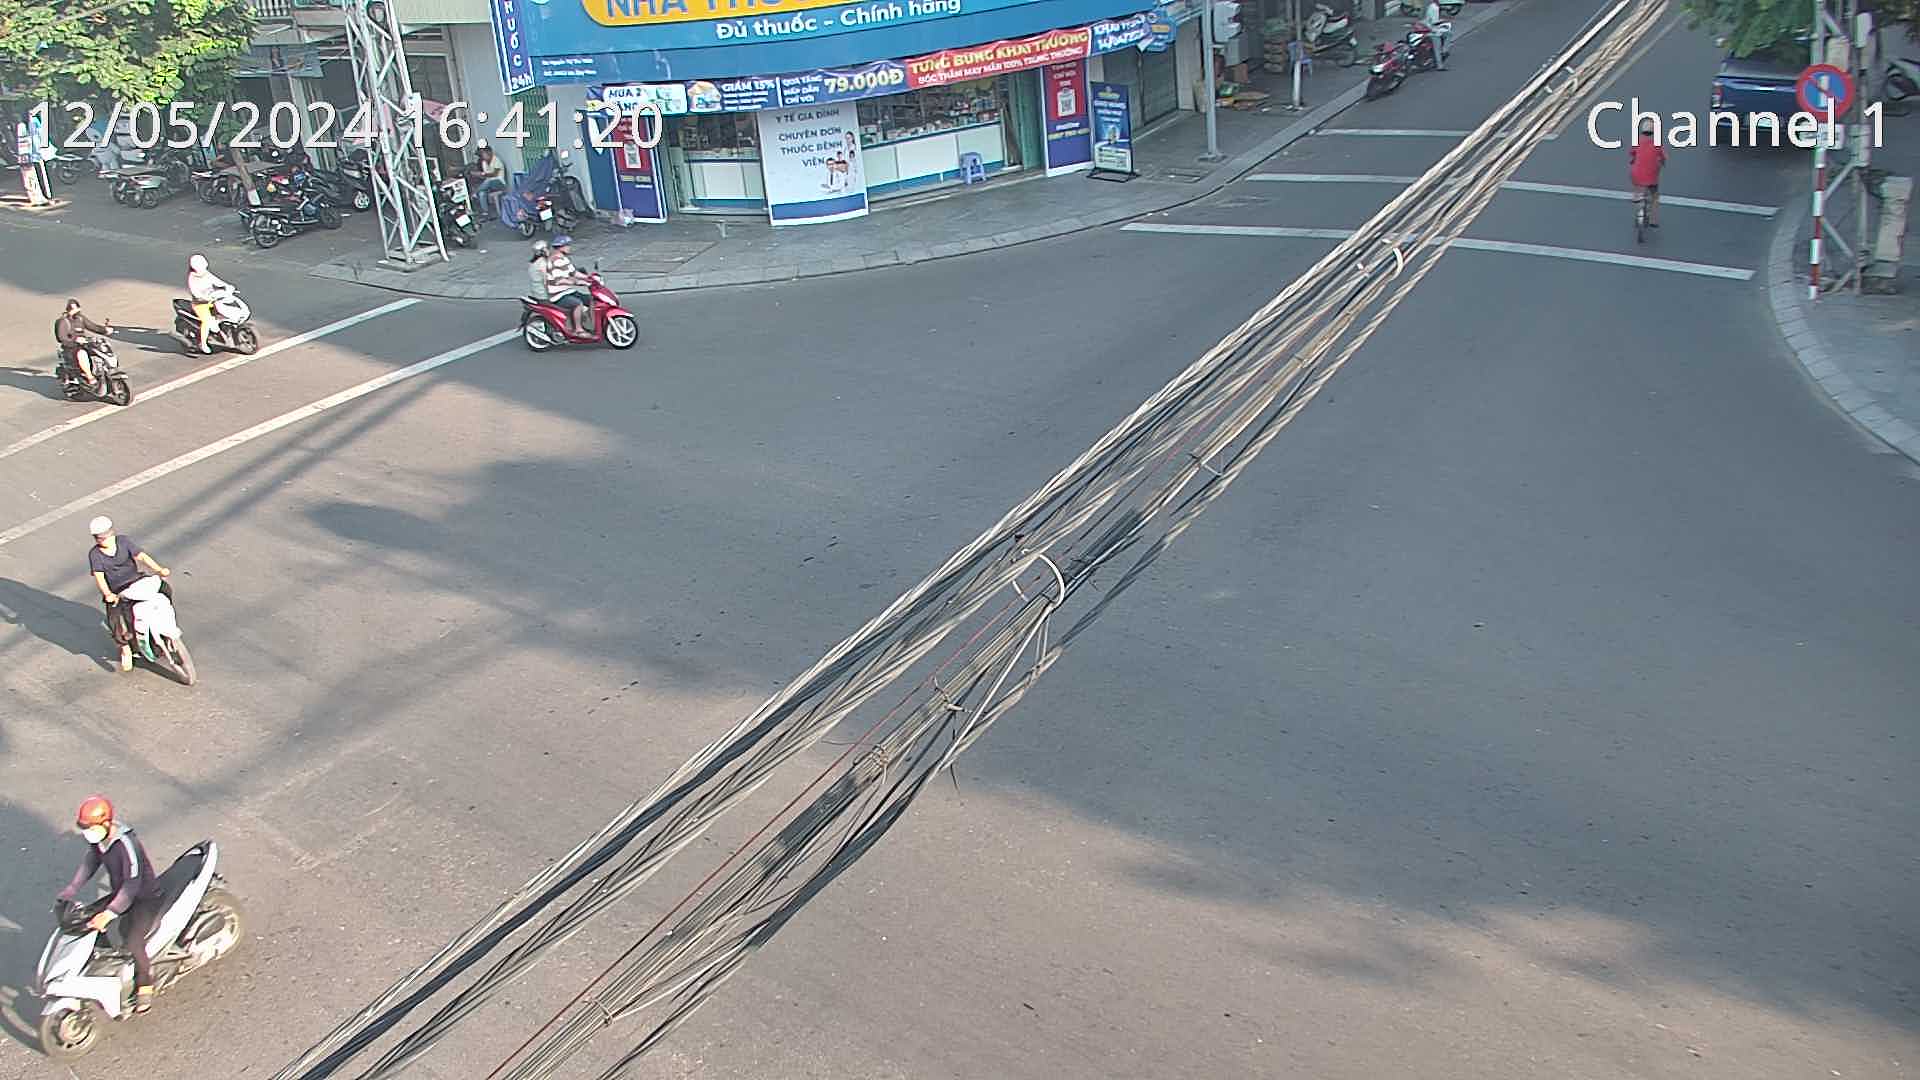 Xem camera giao thông Quy Nhơn Bình Định hình ảnh camera tuyến đường Ngã 4 Lê Lợi - Trần Hưng Đạo